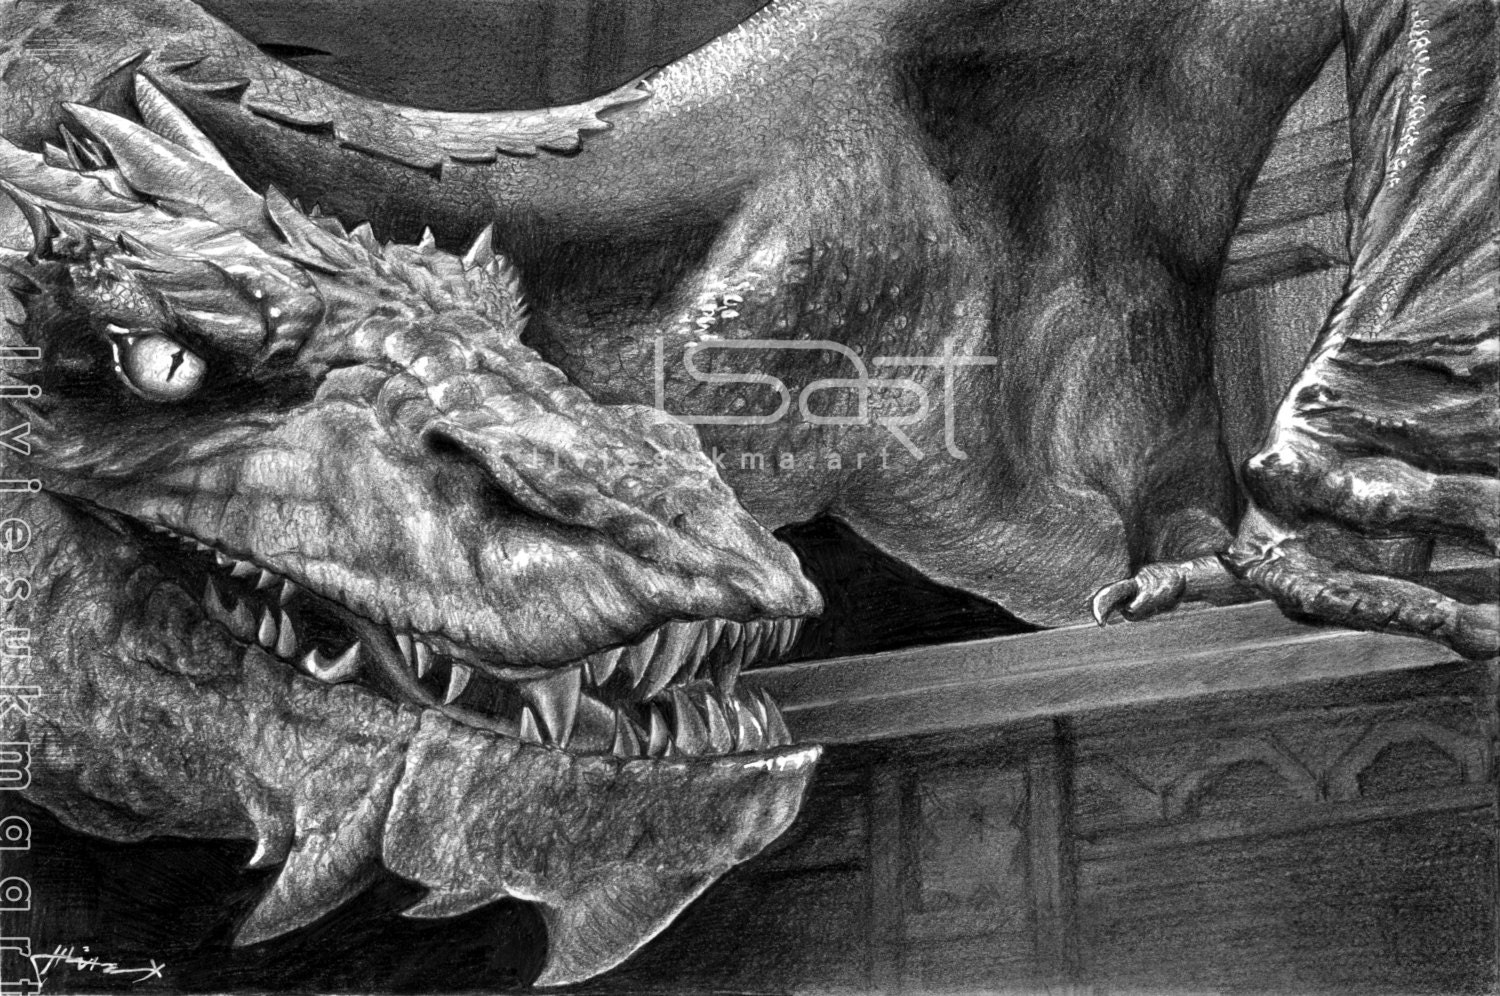 ORIGINAL artwork of Smaug by pencil